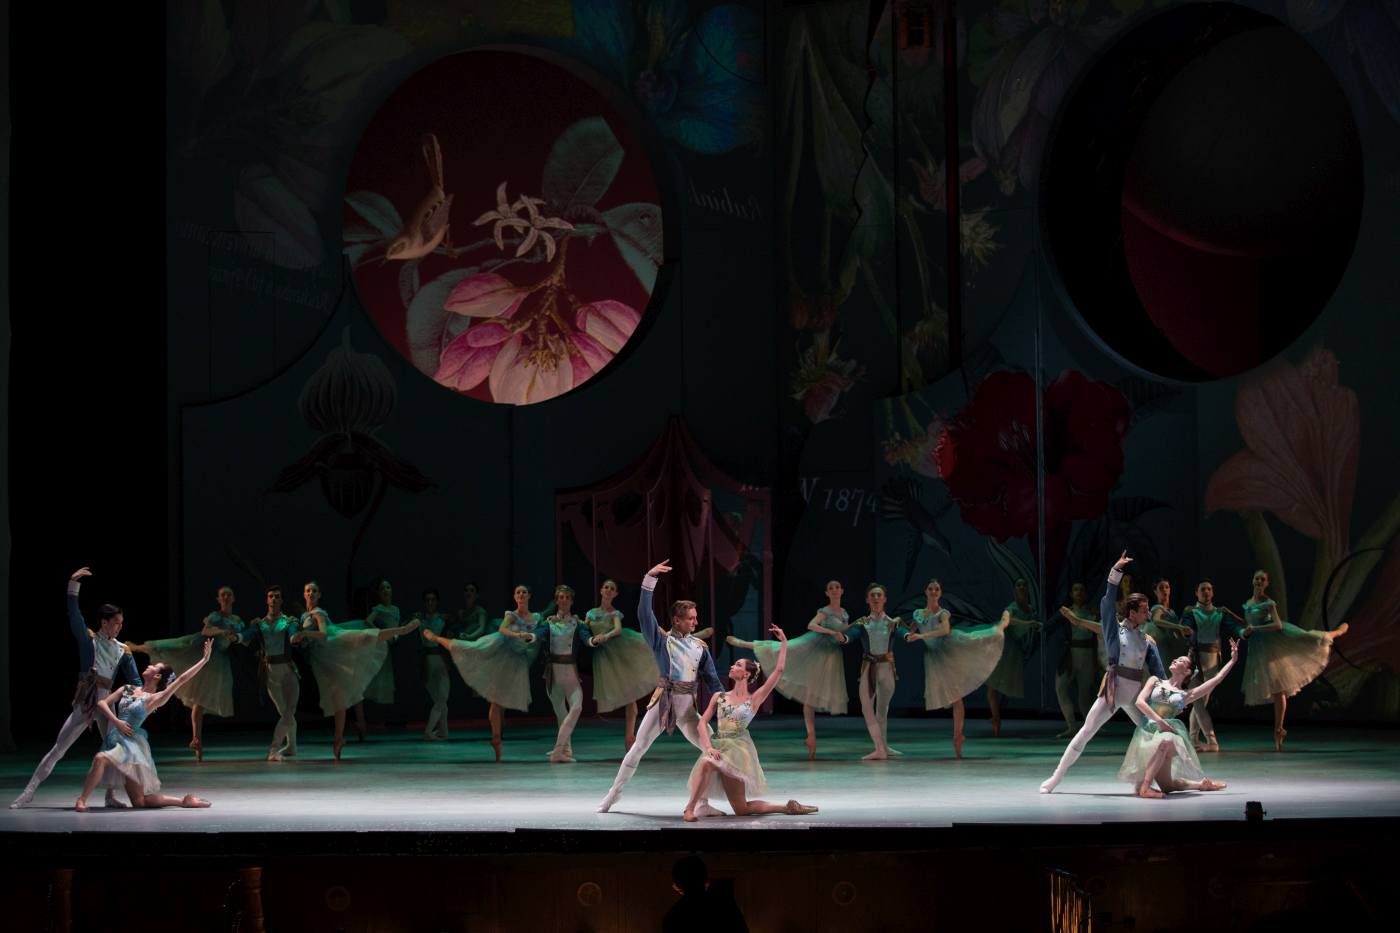 10. Ensemble (Flower Waltz), “The Nutcracker” by Y.Possokhov, Stanislavsky Ballet 2022 © K.Zhitkova 